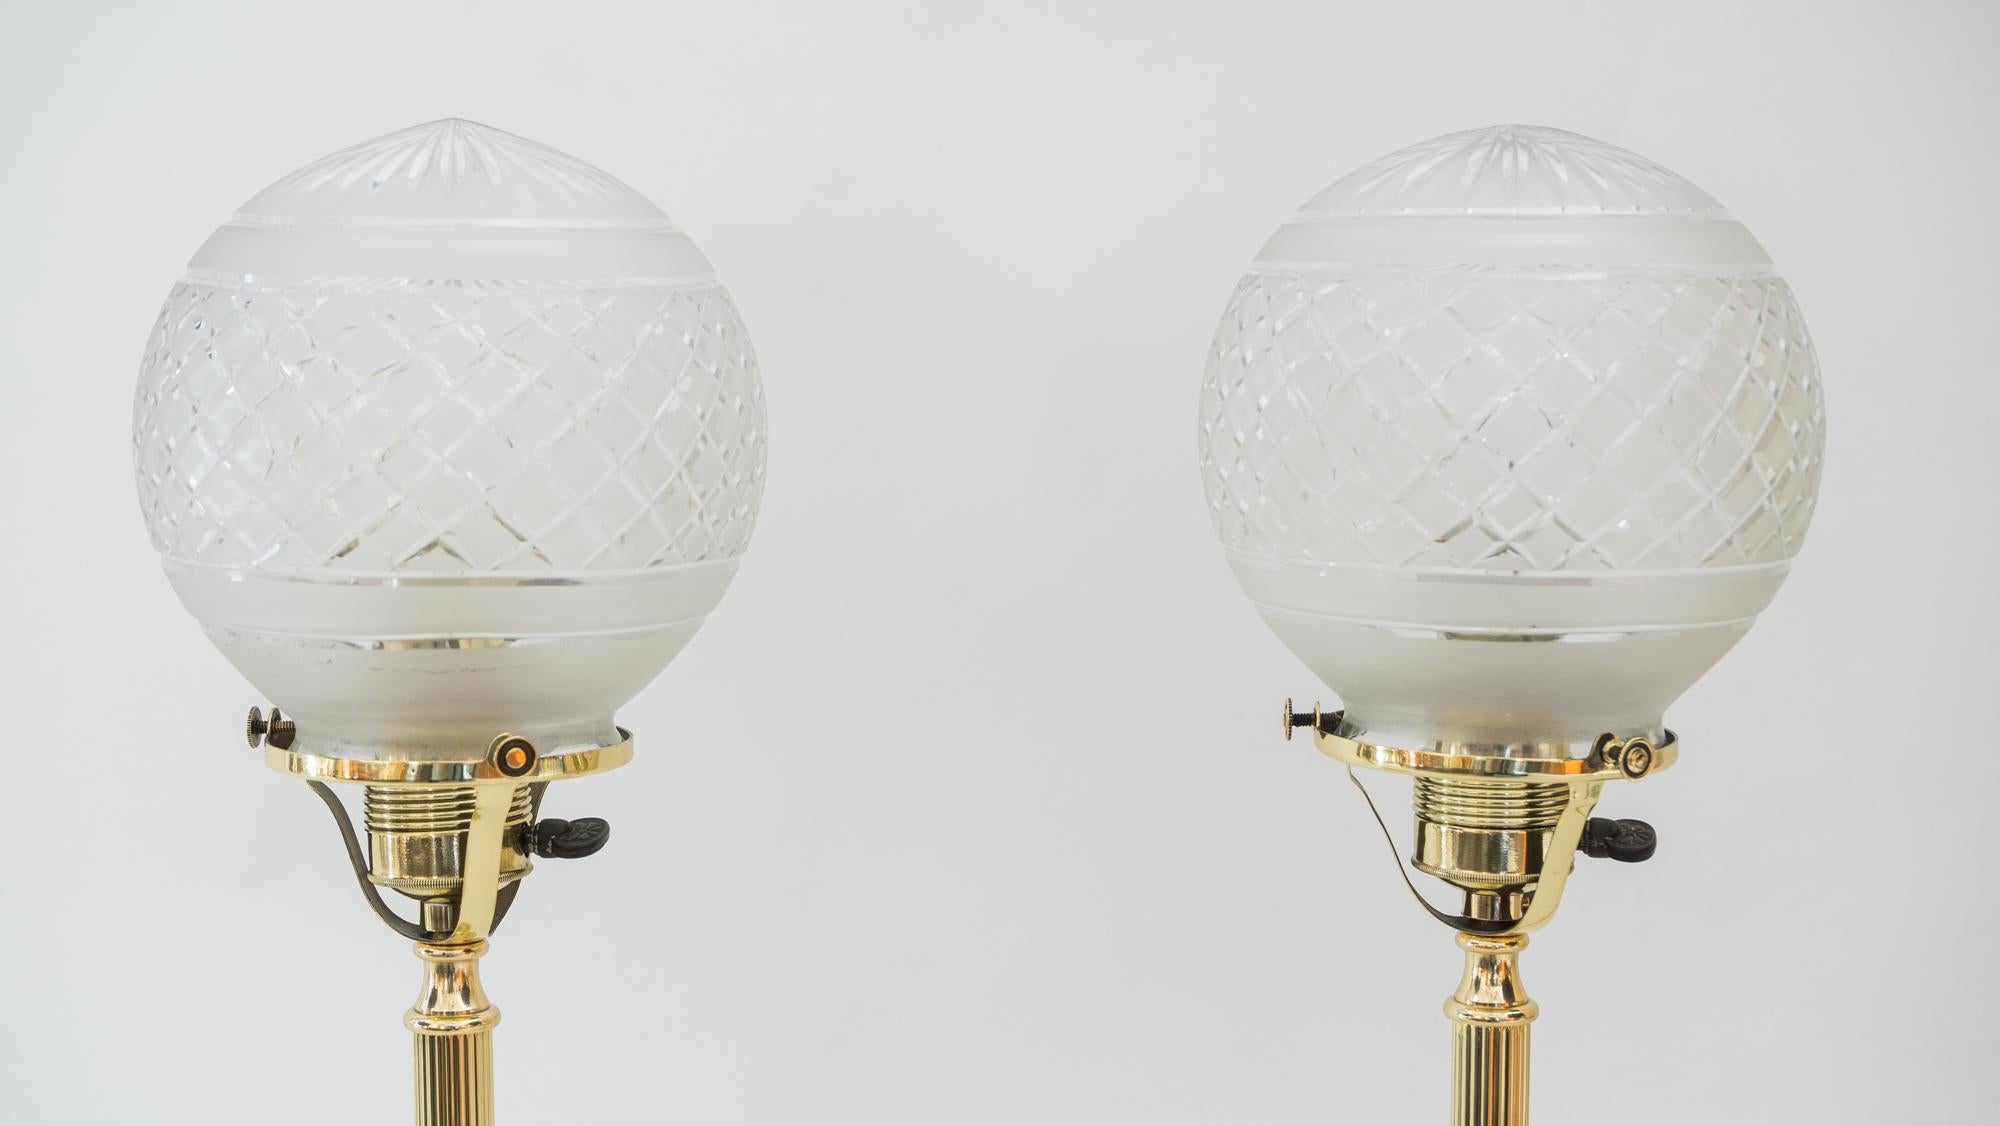 2 Jugendstil-Tischlampen, Wien, um 1908
Poliert und emailliert
Original geschliffene Glasschirme.